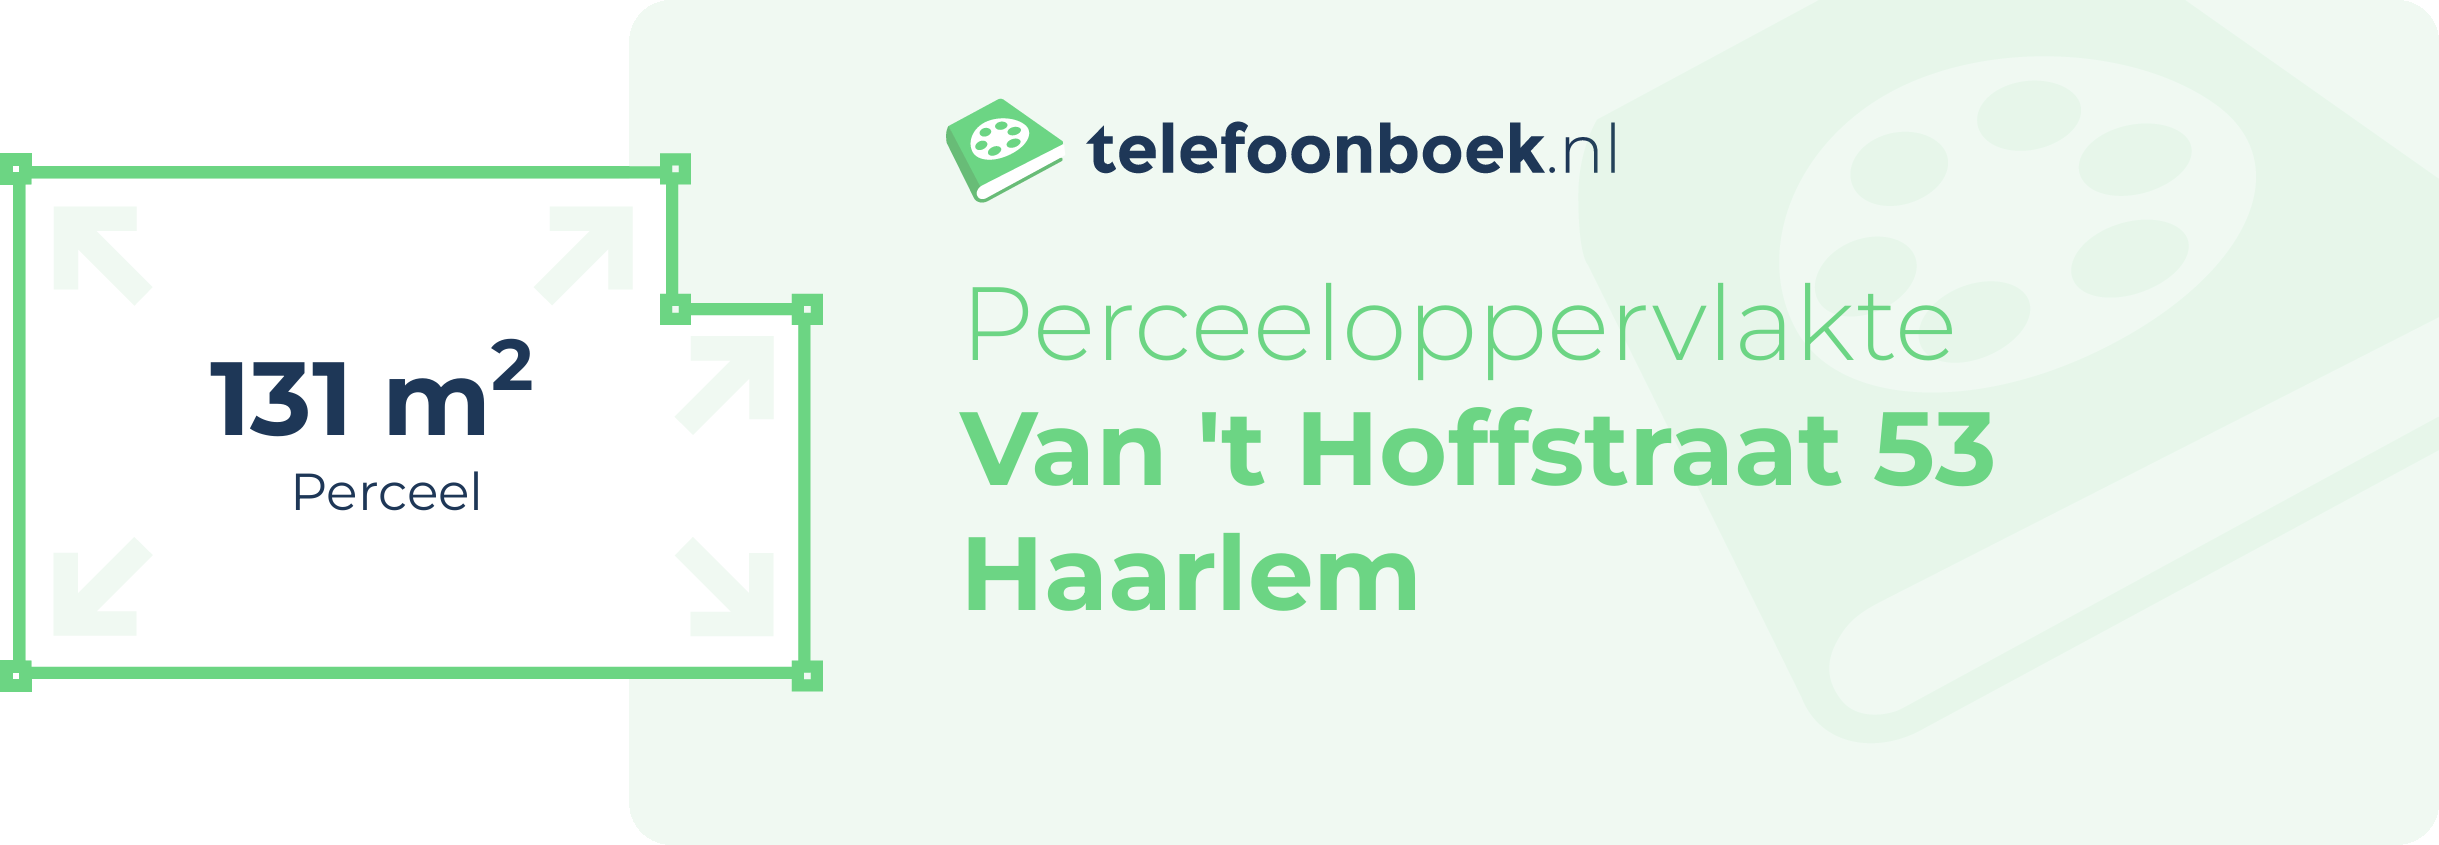 Perceeloppervlakte Van 't Hoffstraat 53 Haarlem